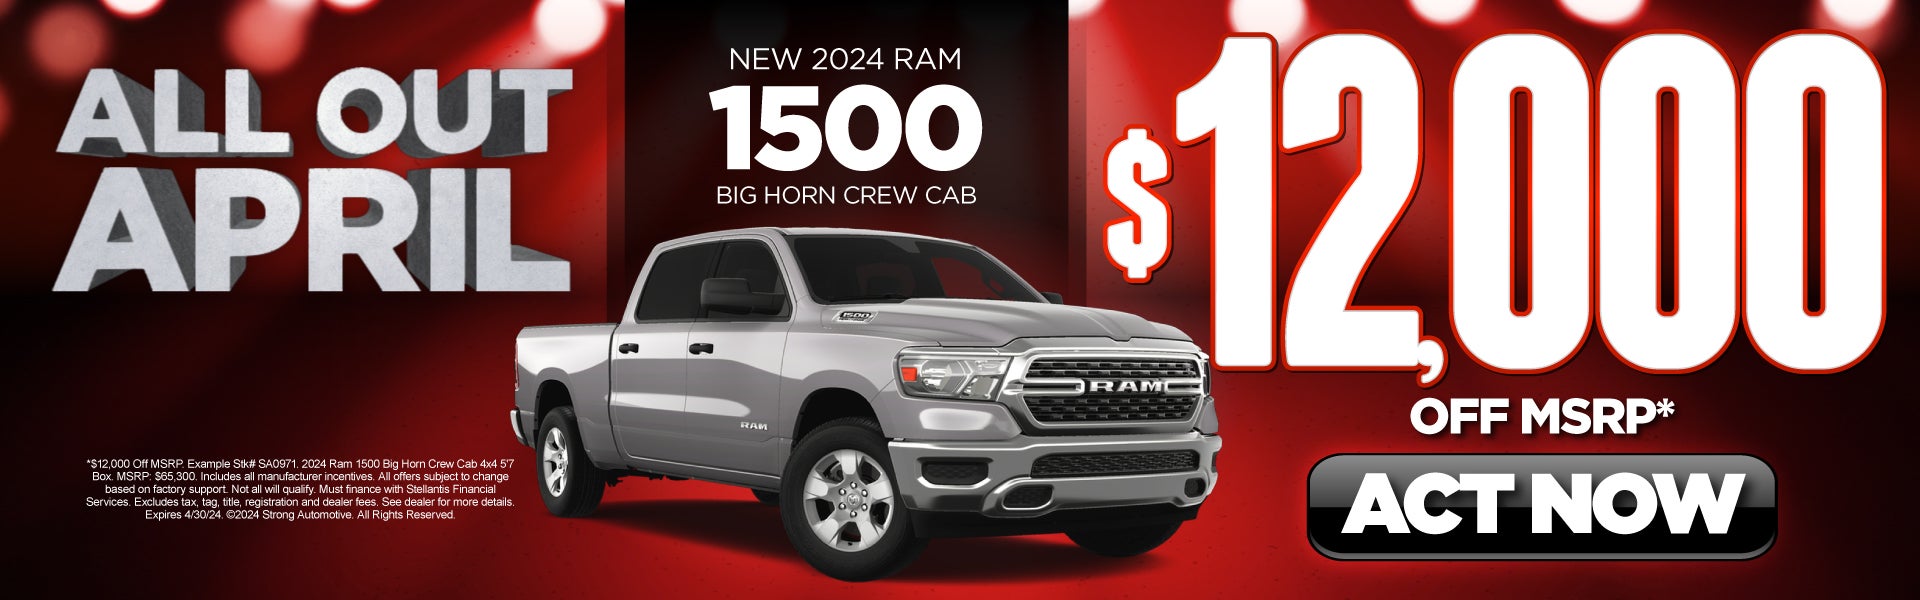 New 2024 RAM 1500 Big Horn Crew Cab | $12,000 off MSRP*